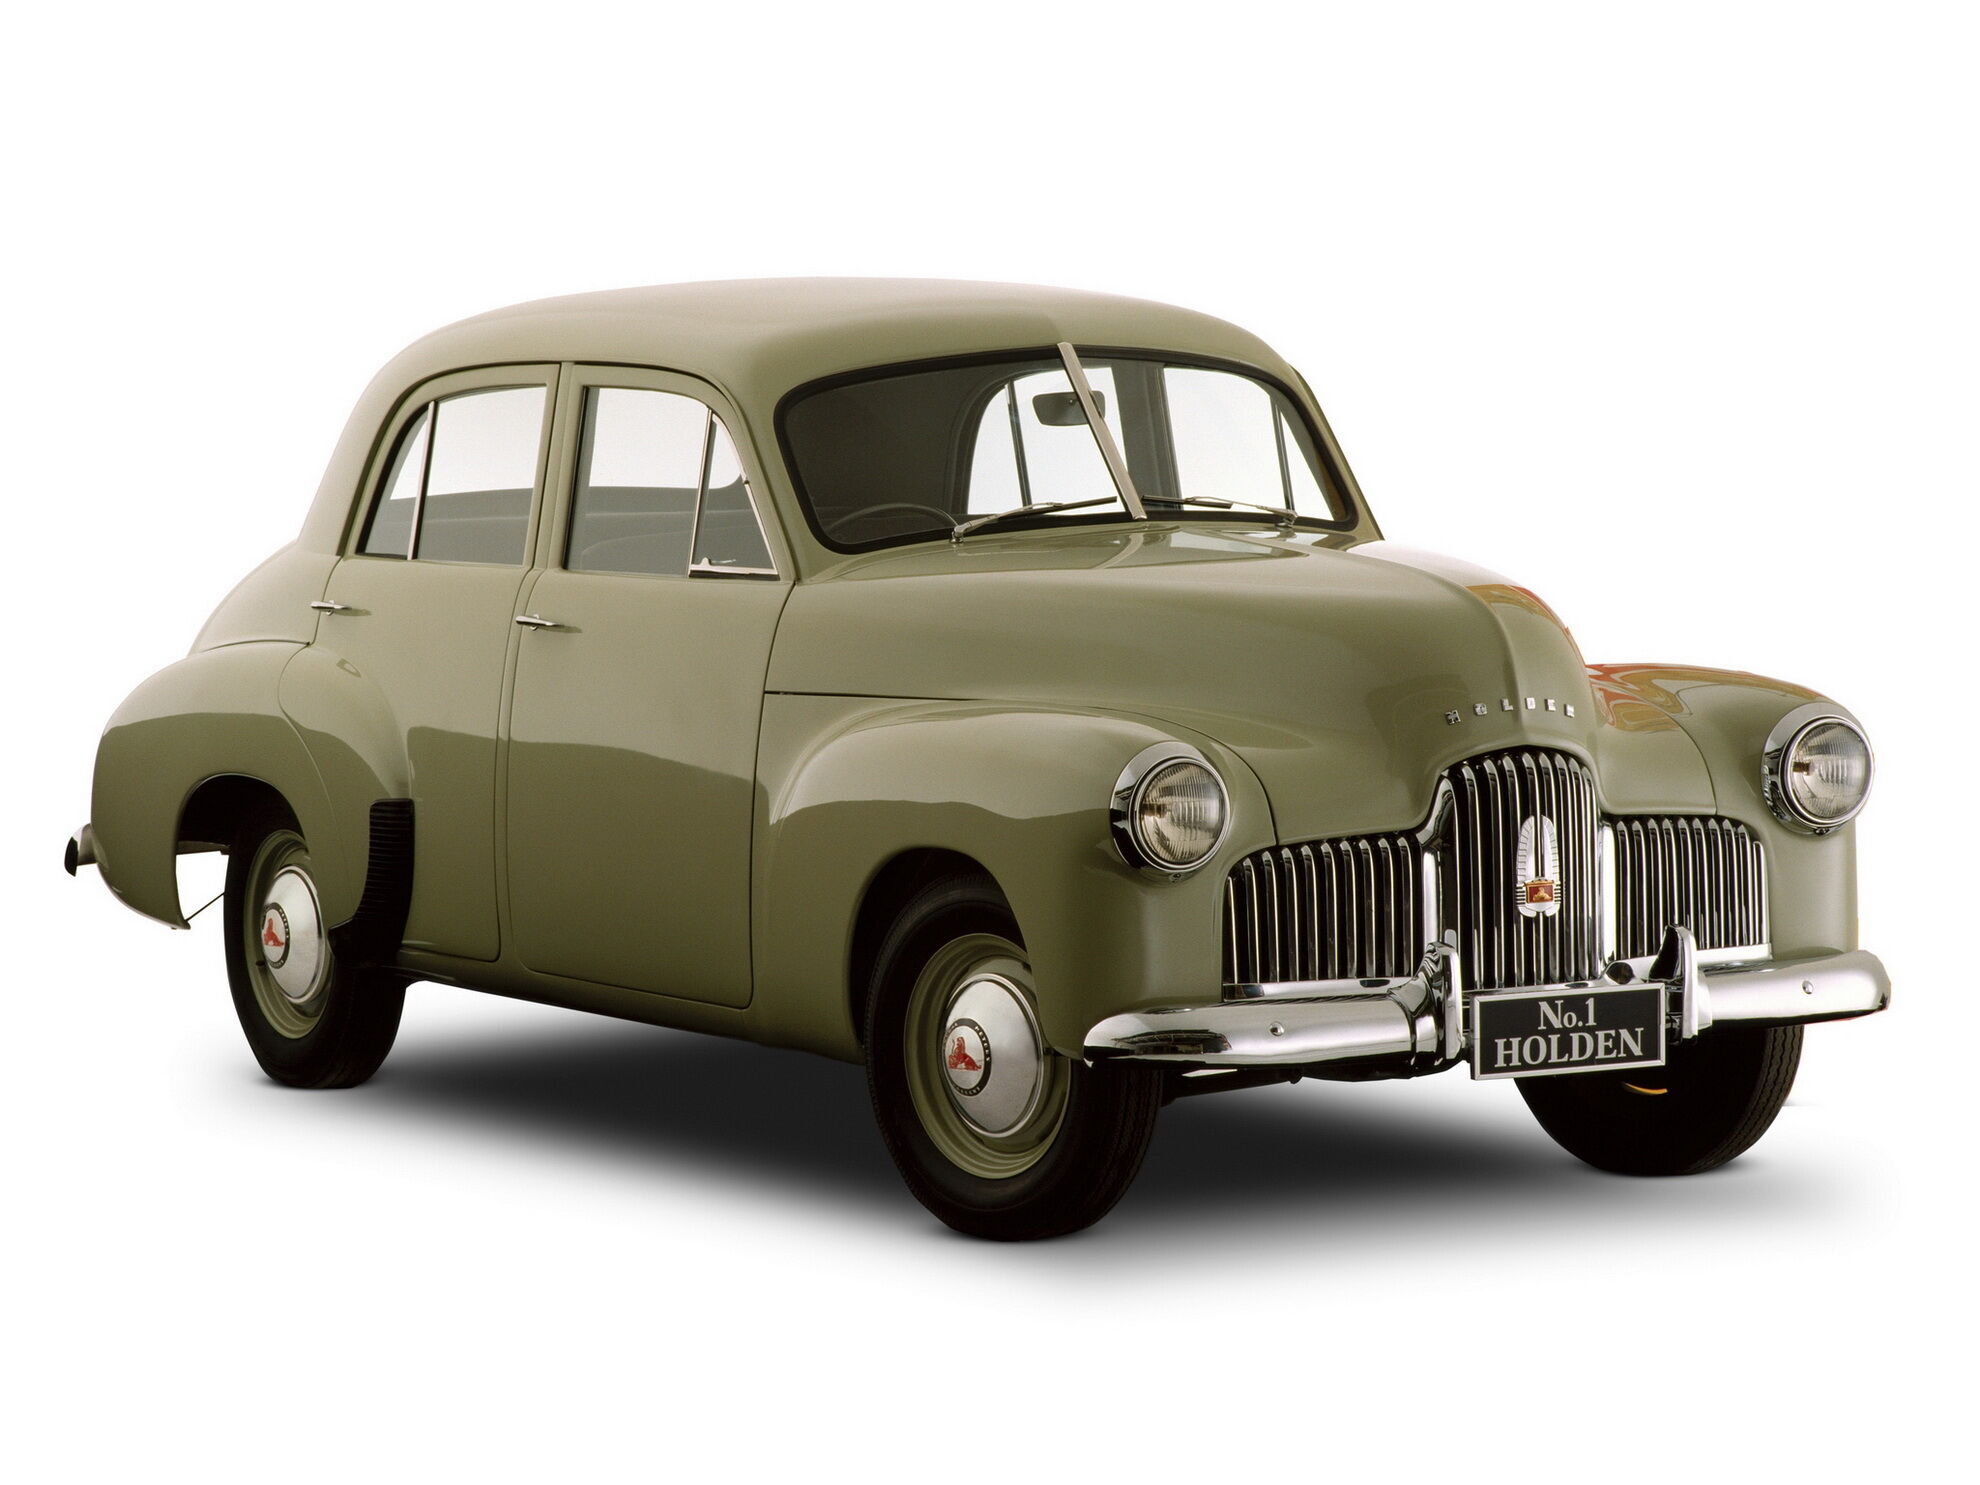 Первый серийный автомобиль Holden модели 48-215 увидел свет в 1948 году